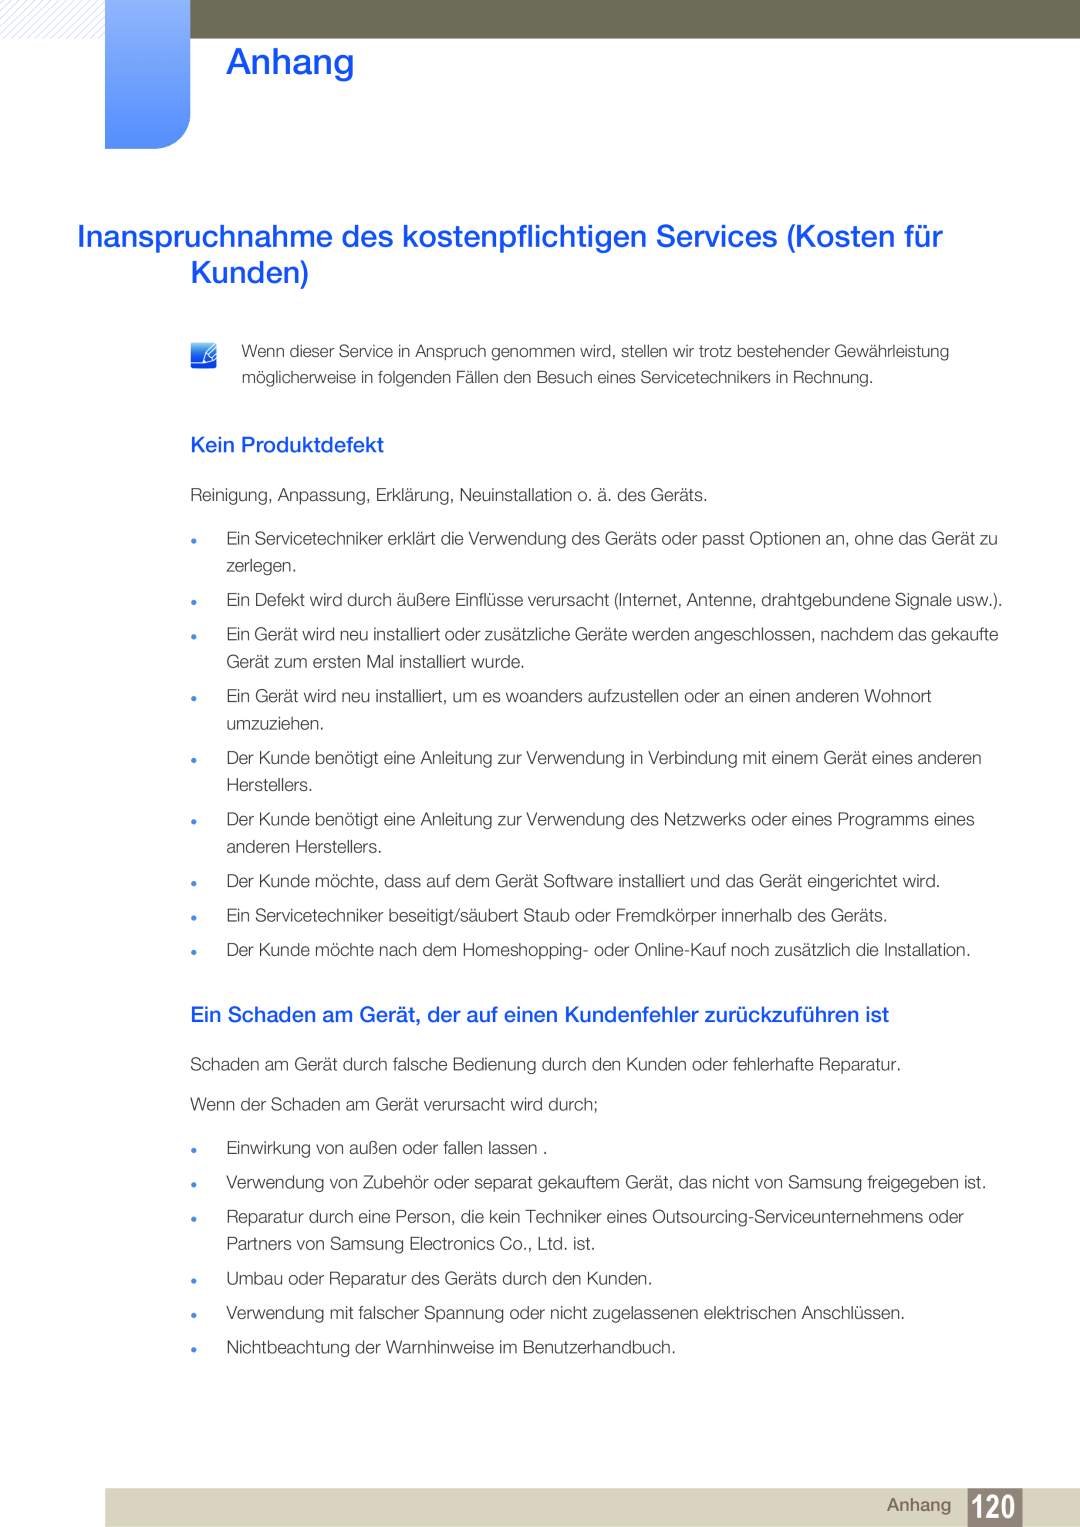 Samsung LS19C45KMRV/EN manual Inanspruchnahme des kostenpflichtigen Services Kosten für Kunden, Kein Produktdefekt, Anhang 